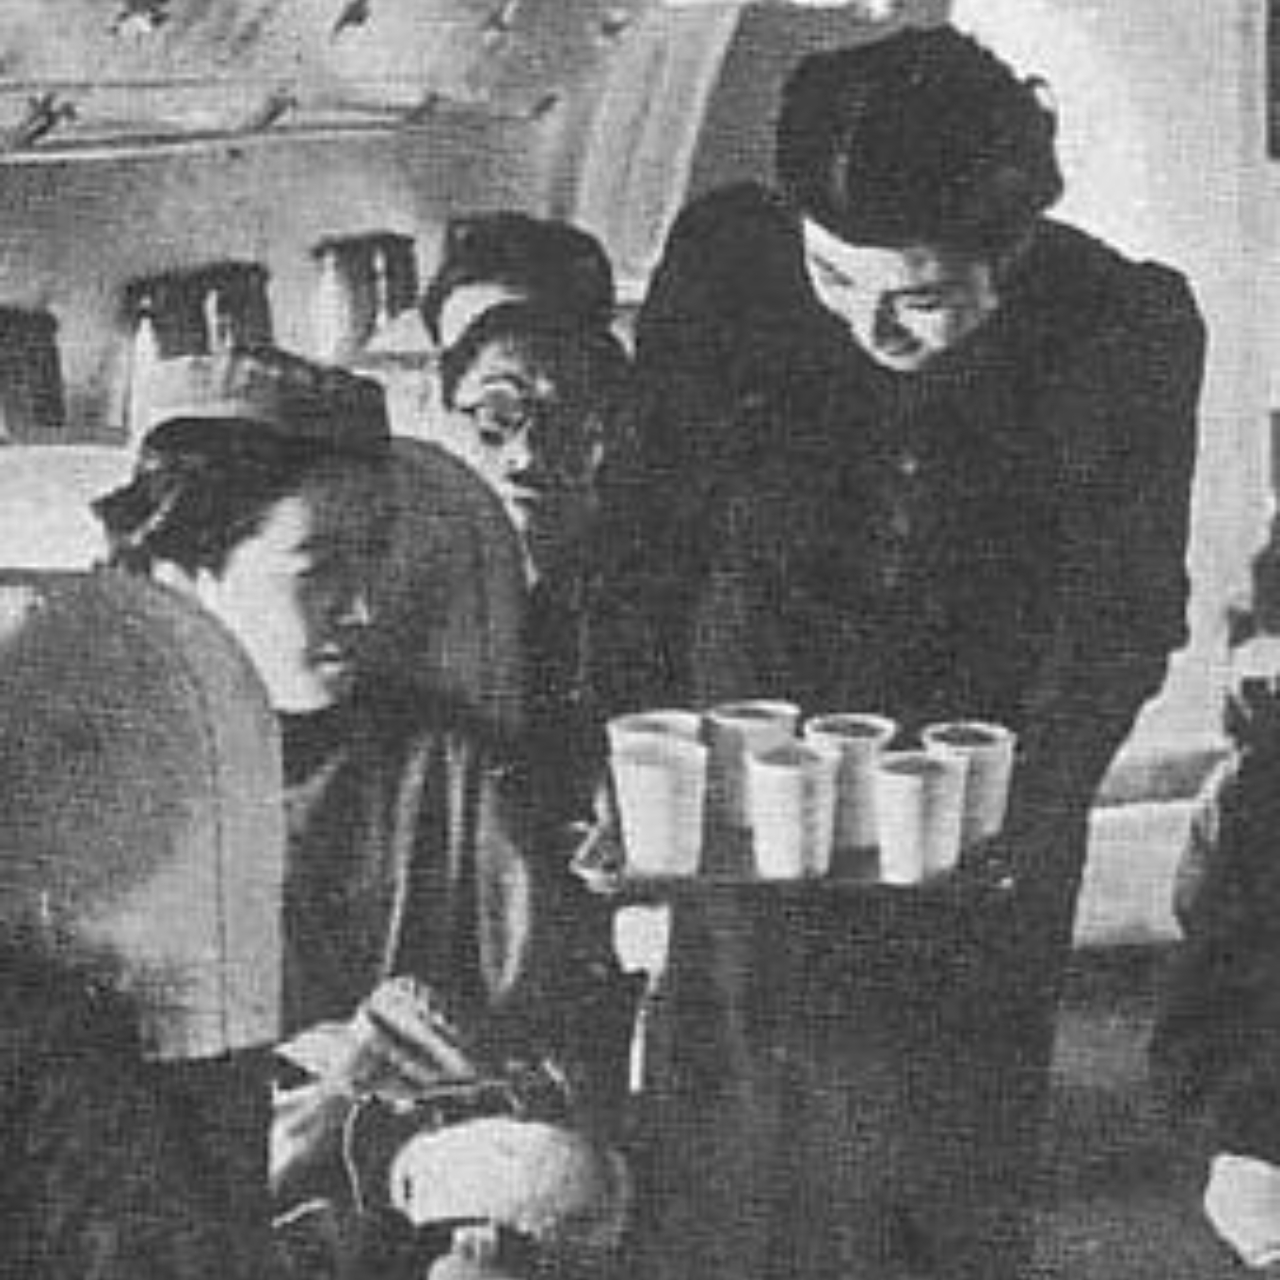 Comissária de bordo da Imperial Japanese Airways entregando bebidas a passageiros, por volta de 1940